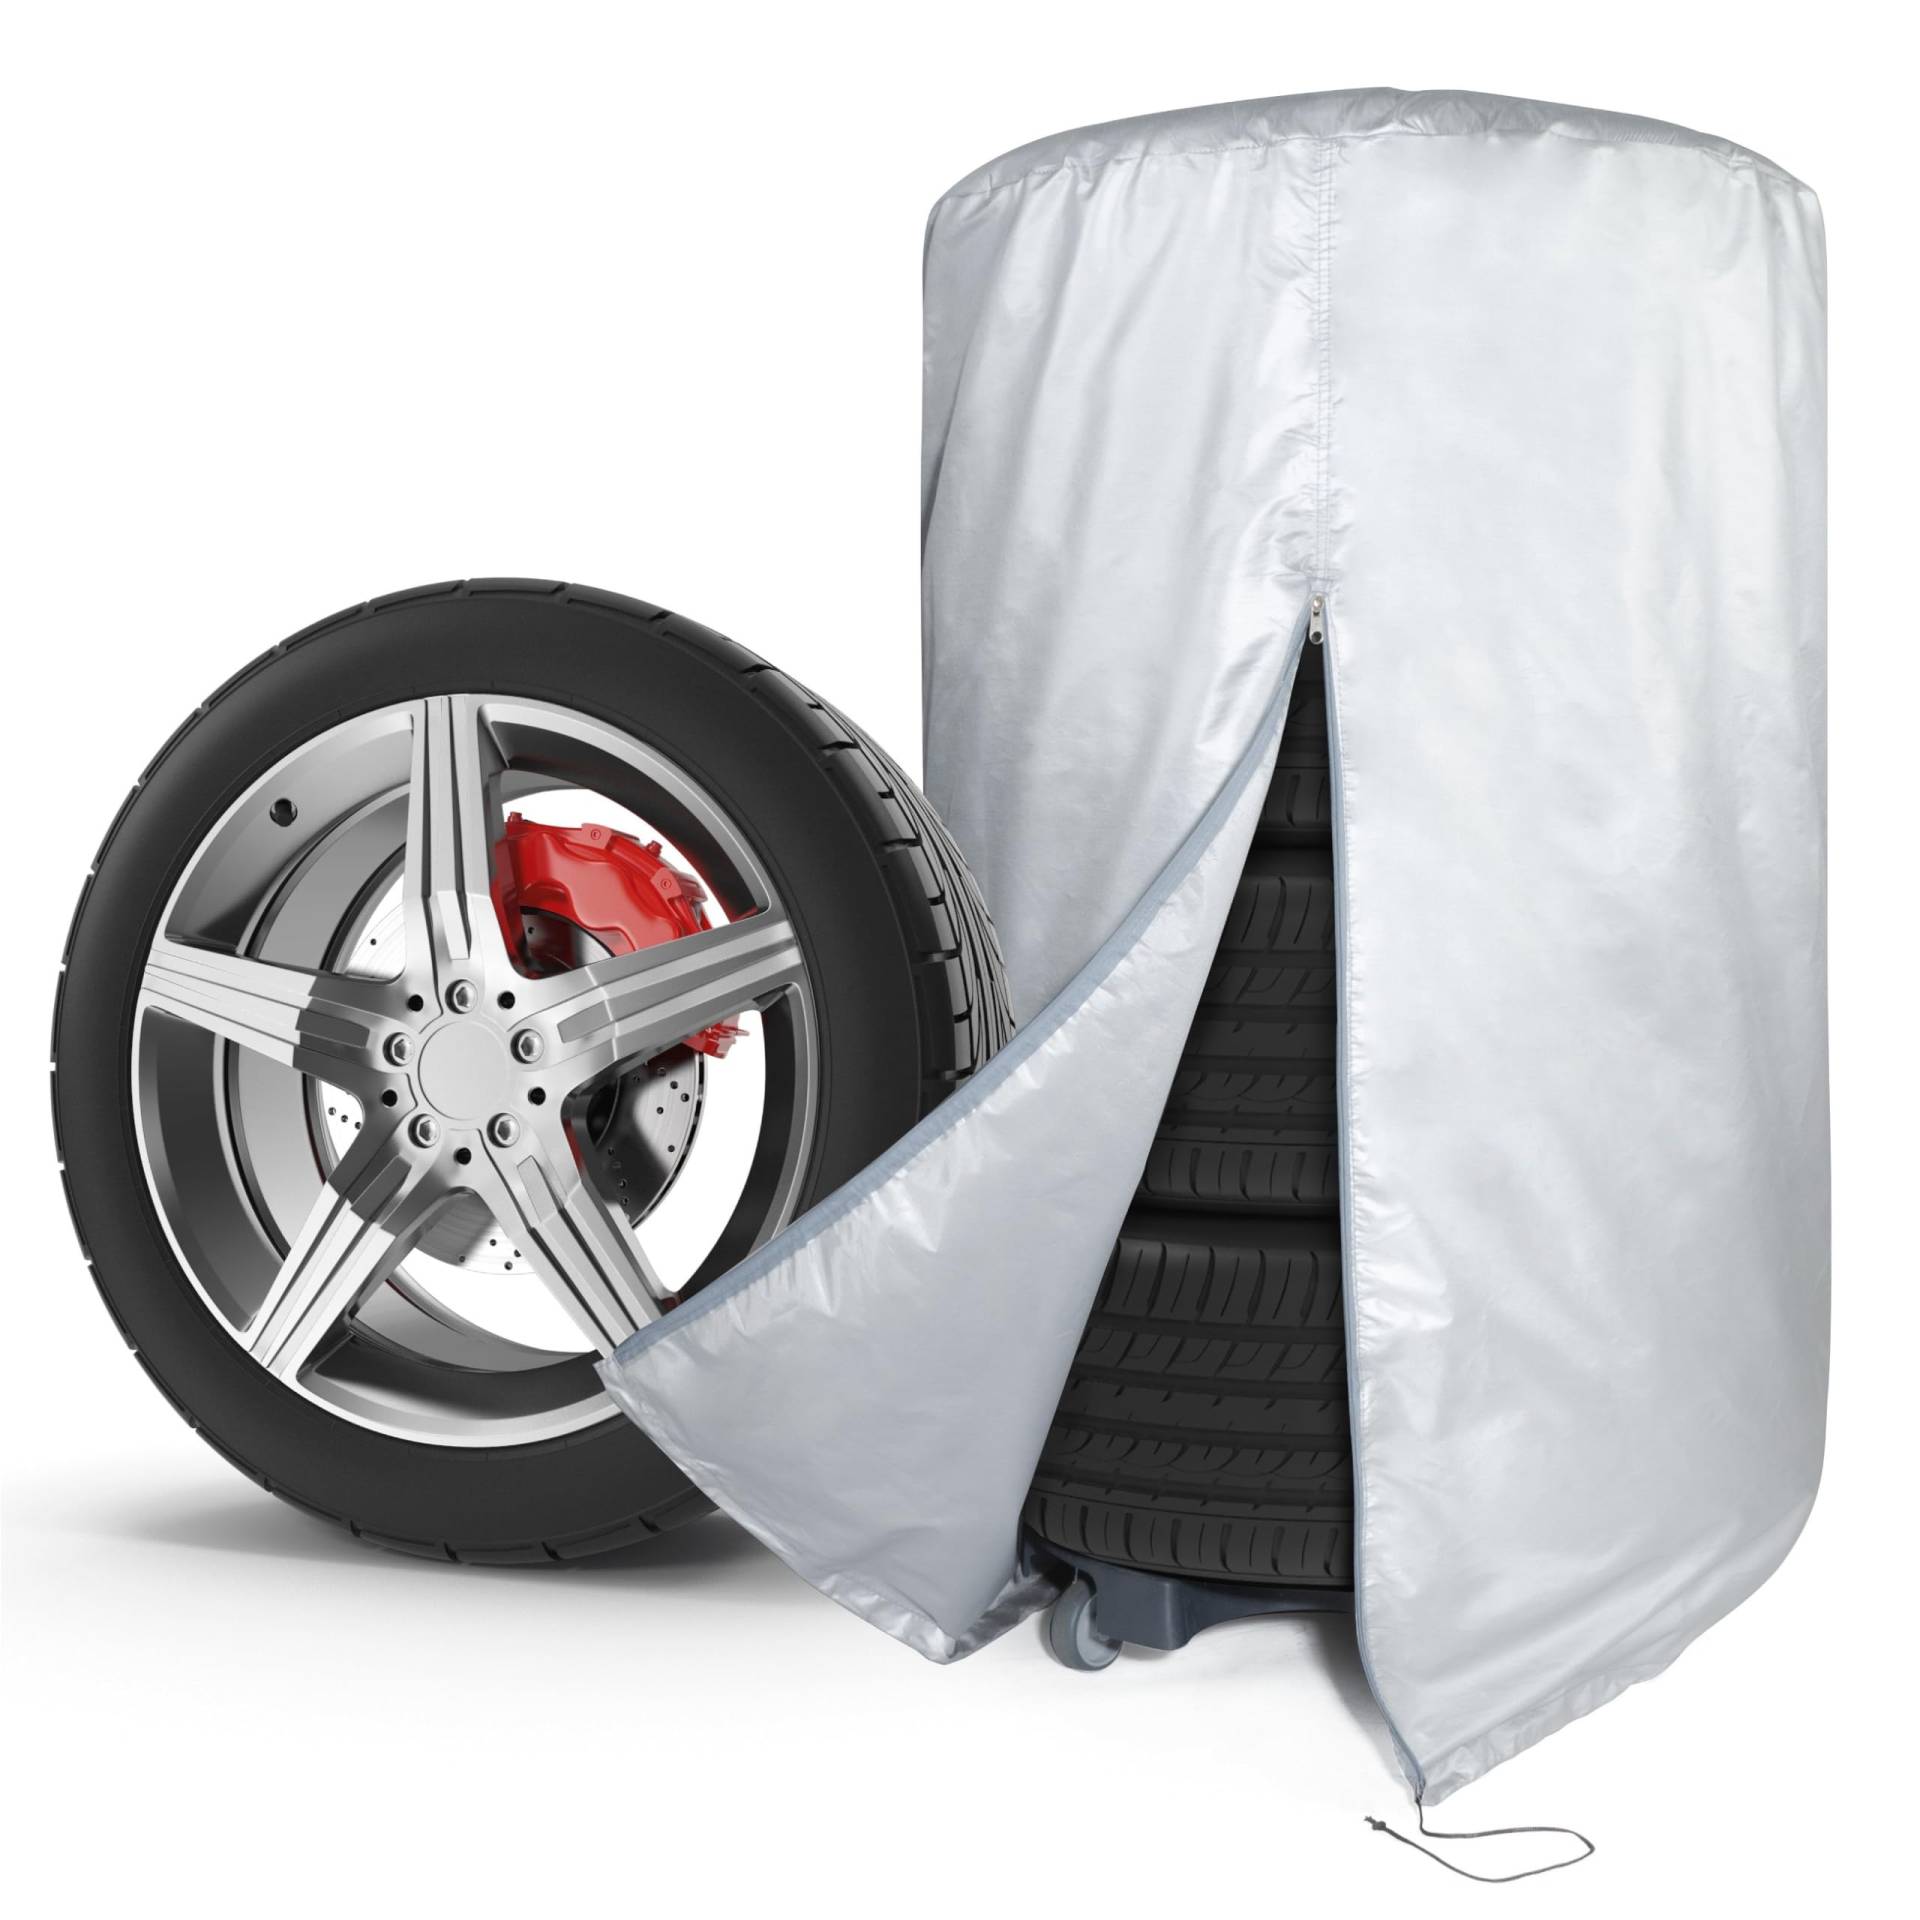 WALSER Auto Reifentasche, Autoreifen Aufbewahrung für 4 Reifen, Autoreifen Hülle, Autoreifen Tasche, Reifen Aufbewahrung, Reifen Hülle, Reifen Sack für Reifen Lagerung, Reifen Tasche silber 15-16 Zoll von Walser